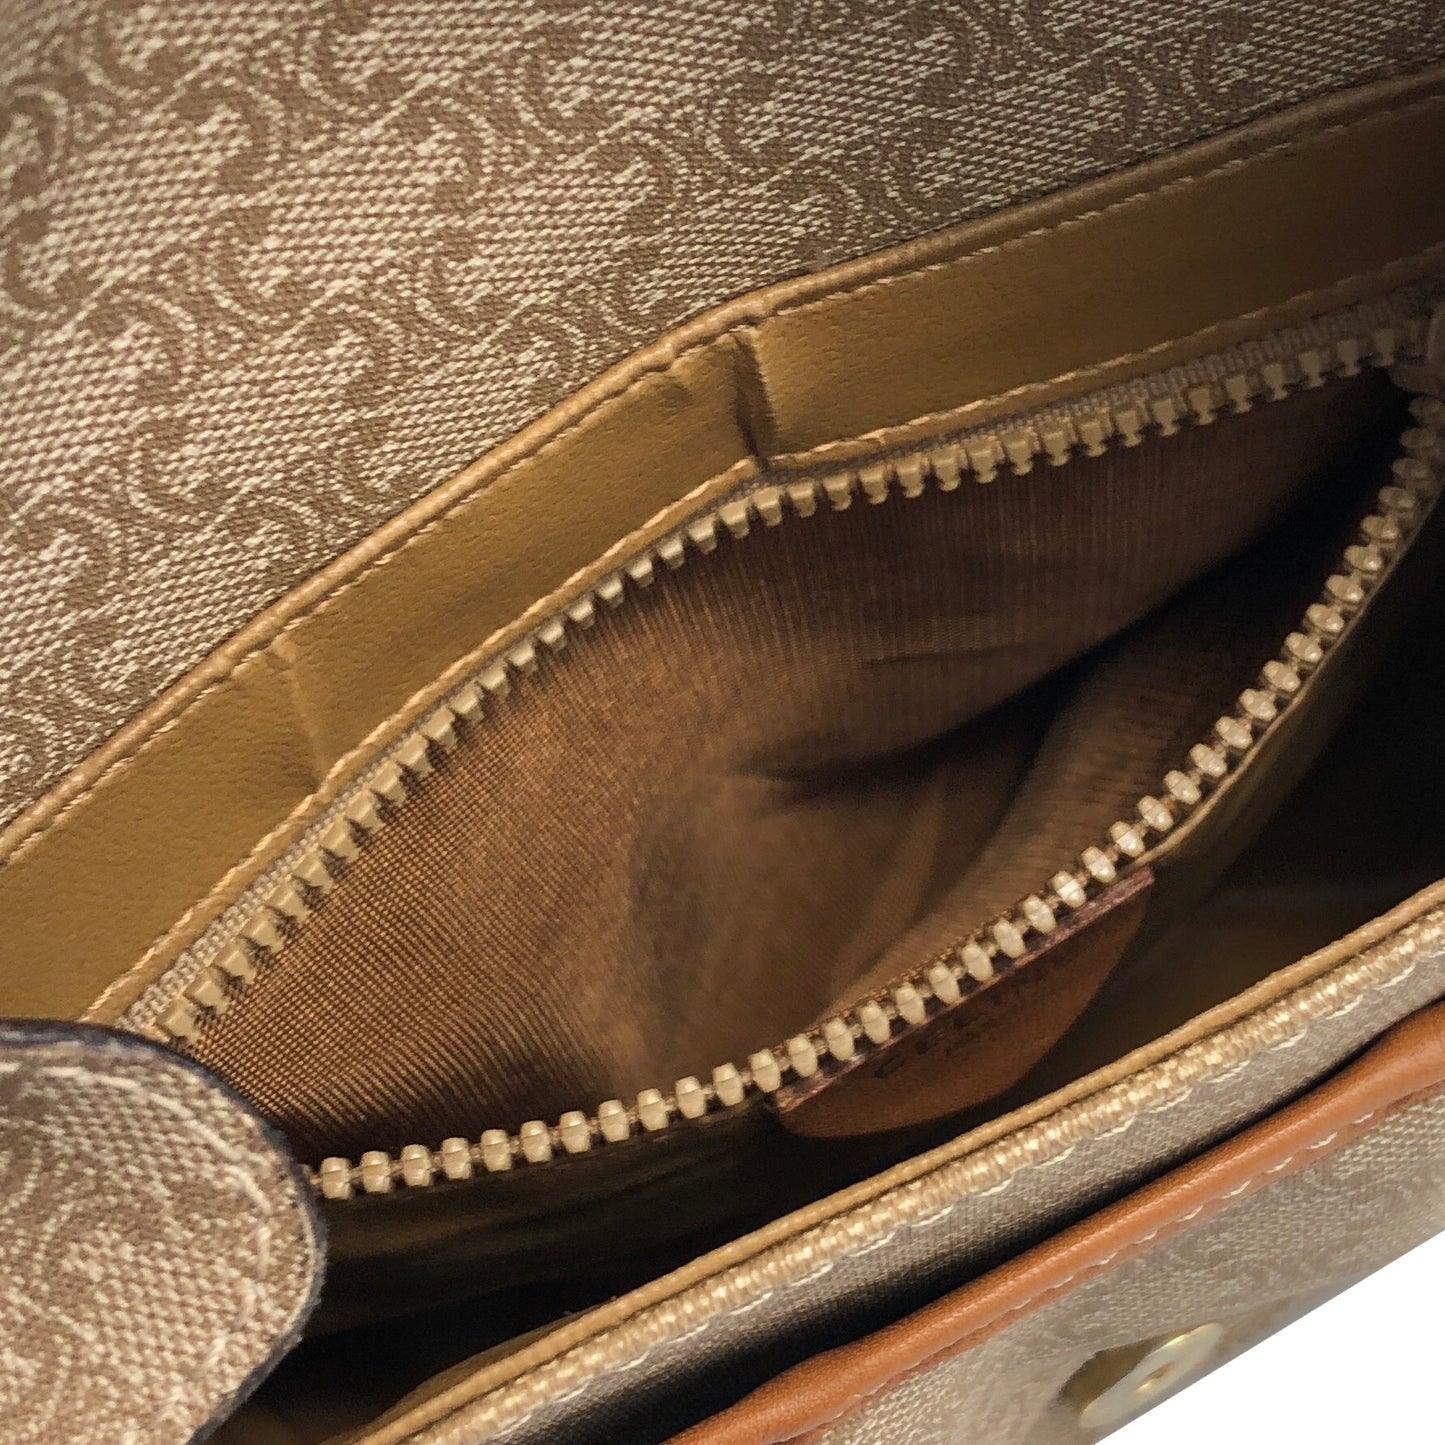 CELINE Macadam Blason Leather Shoulder bag Beige Vintage 78bcka